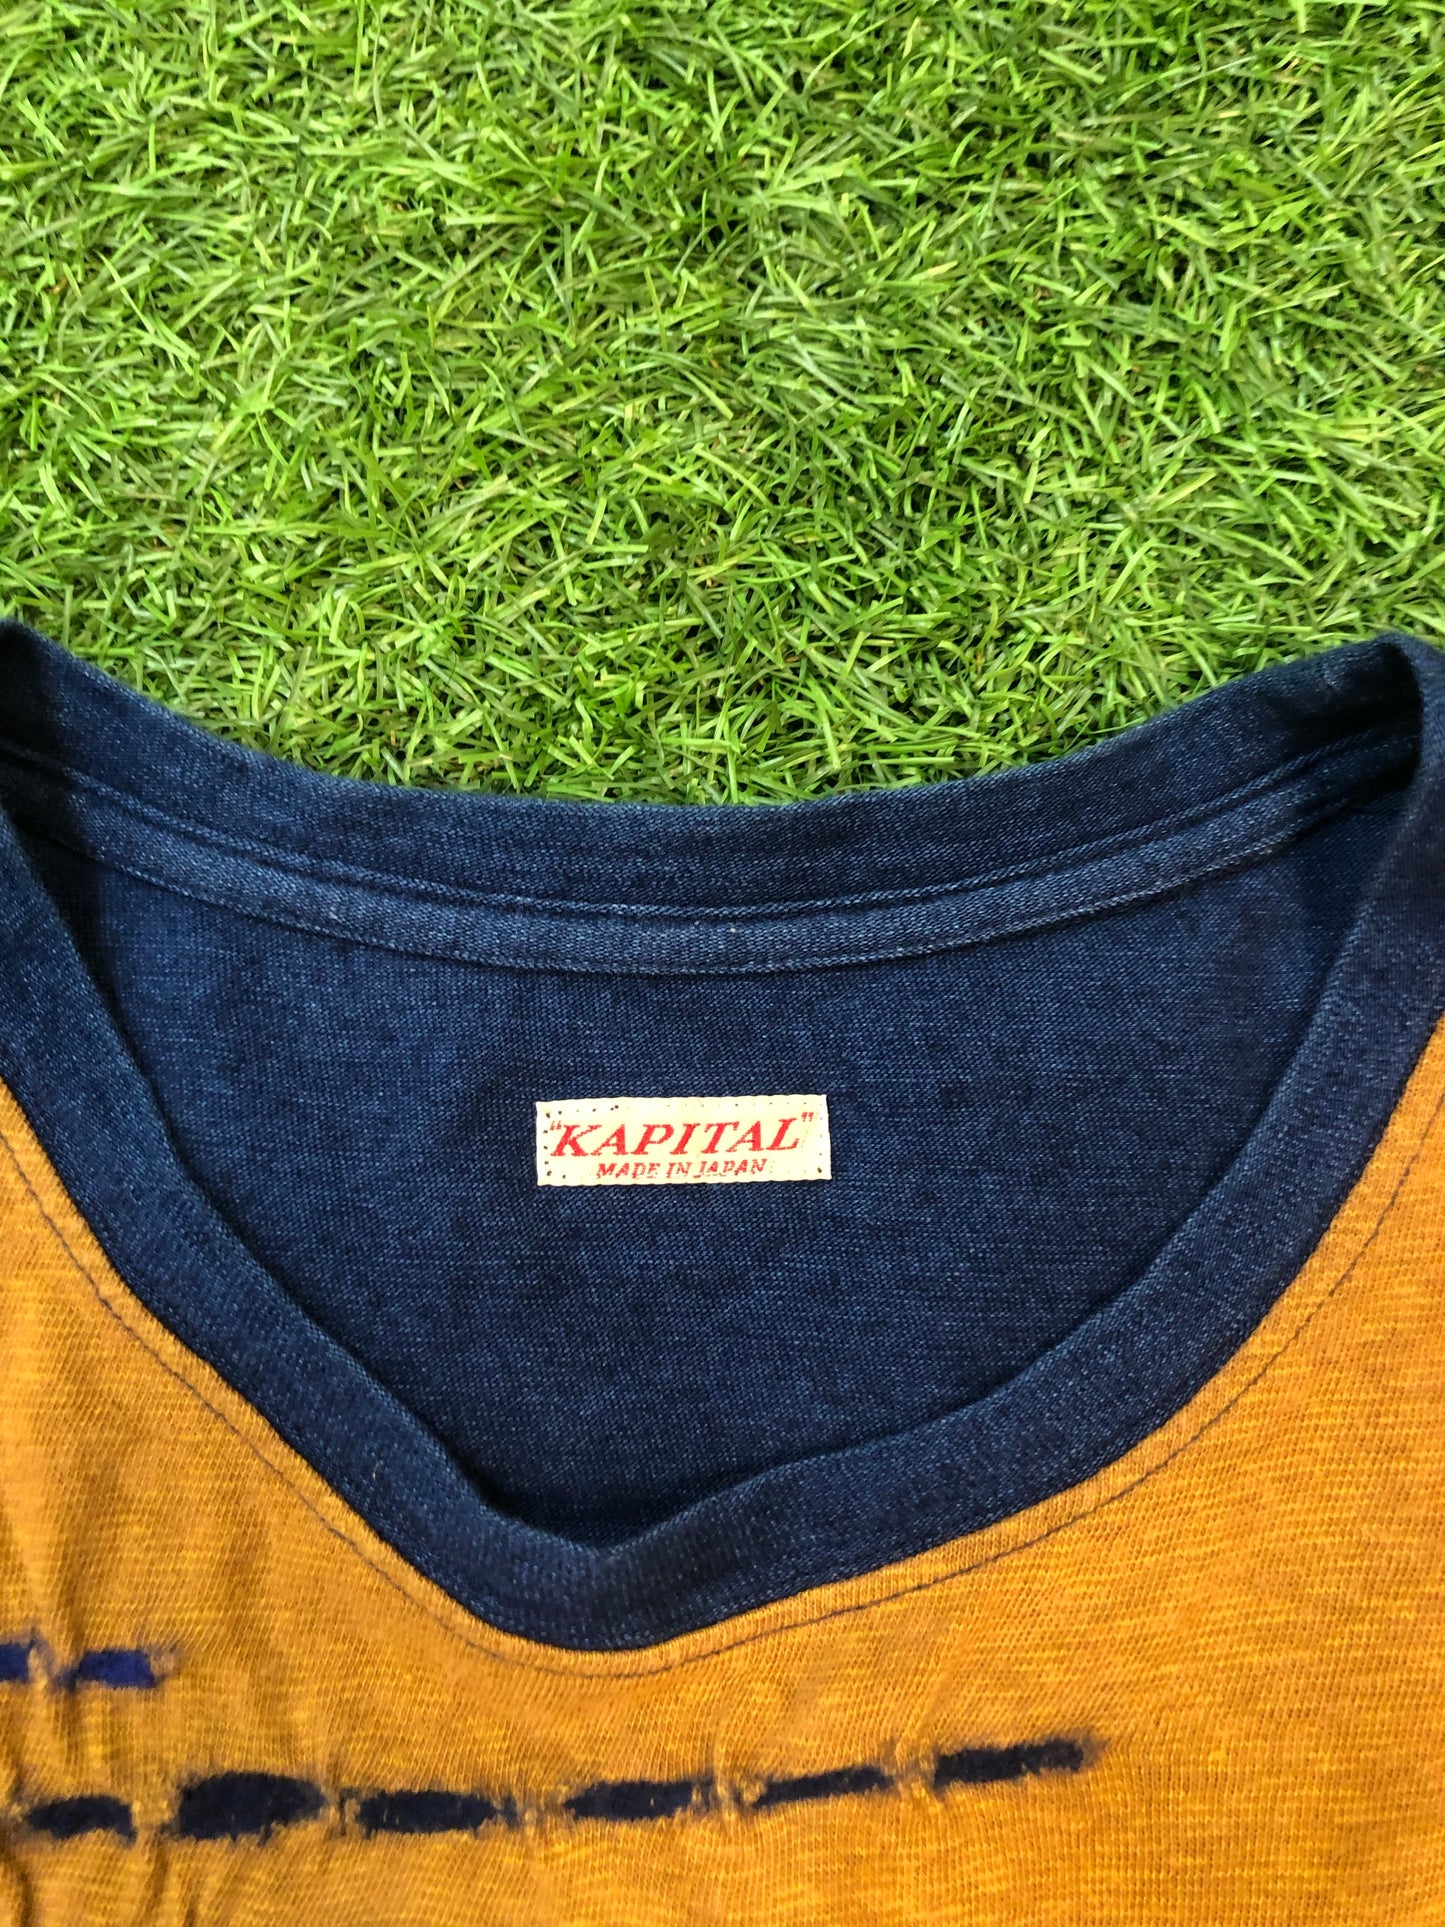 Kapital Thread Stitching T-Shirt